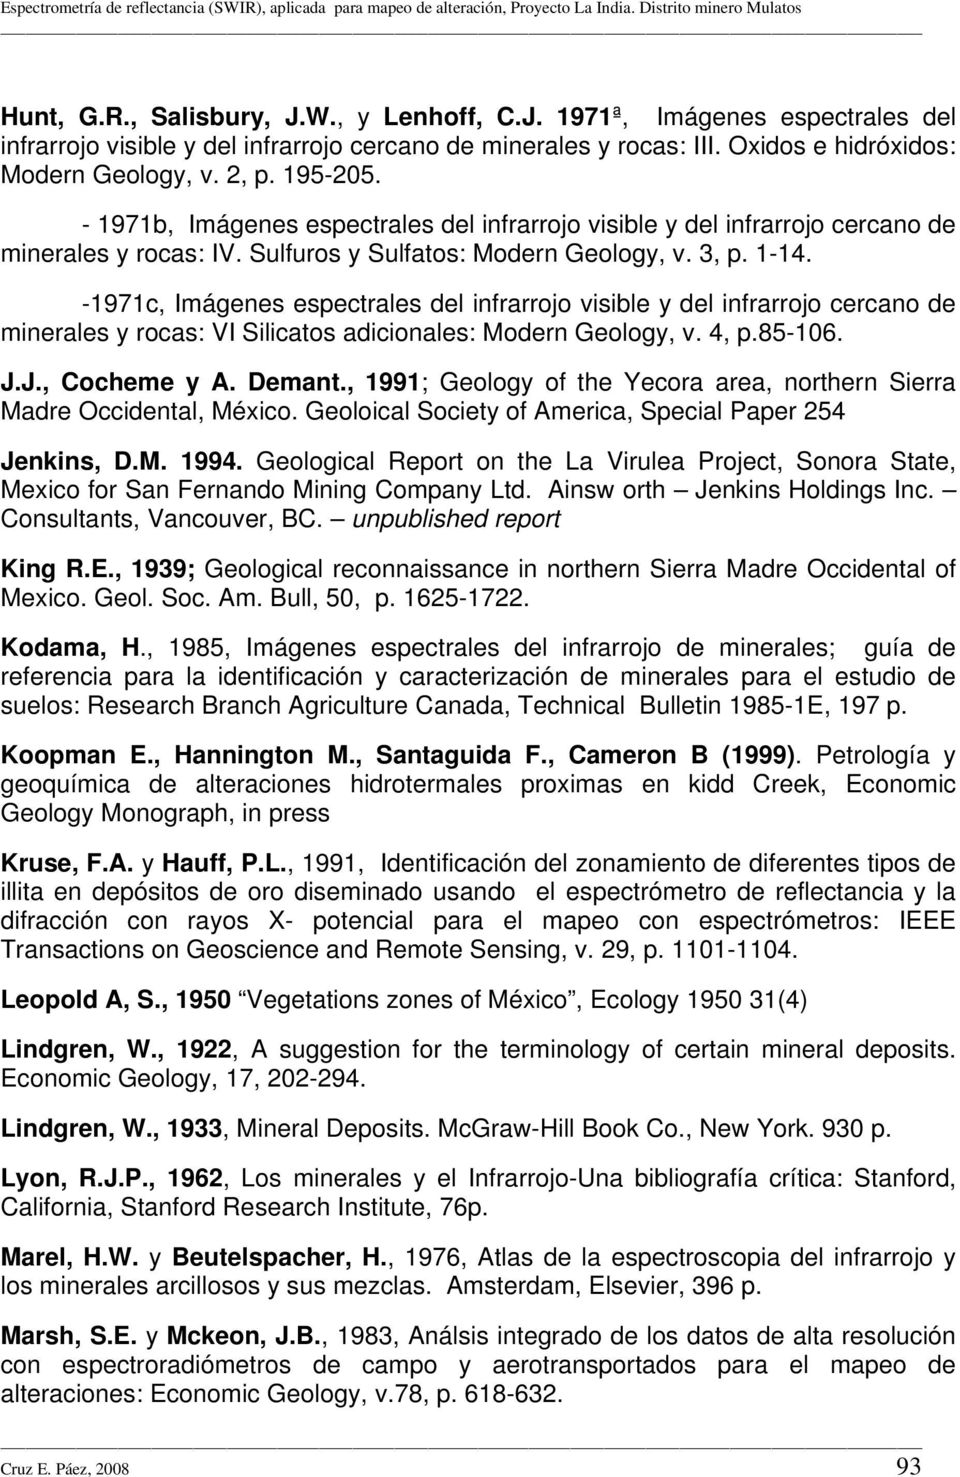 -1971c, Imágenes espectrales del infrarrojo visible y del infrarrojo cercano de minerales y rocas: VI Silicatos adicionales: Modern Geology, v. 4, p.85-106. J.J., Cocheme y A. Demant.